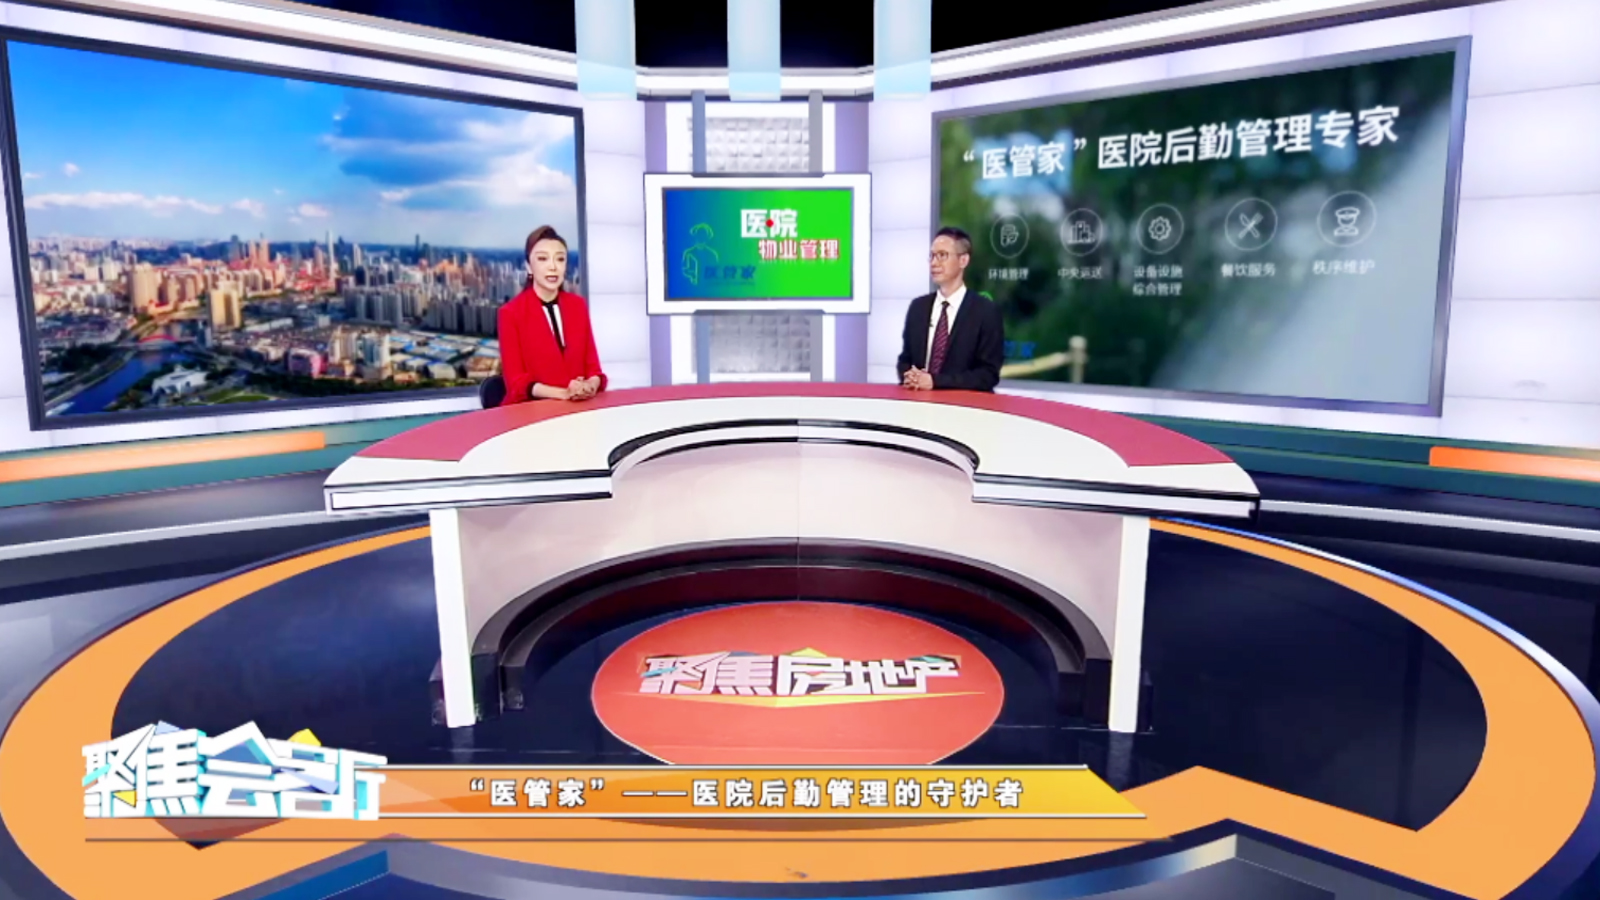 医管家总裁朱春堂做客天津电视台 《聚焦房地产》栏目